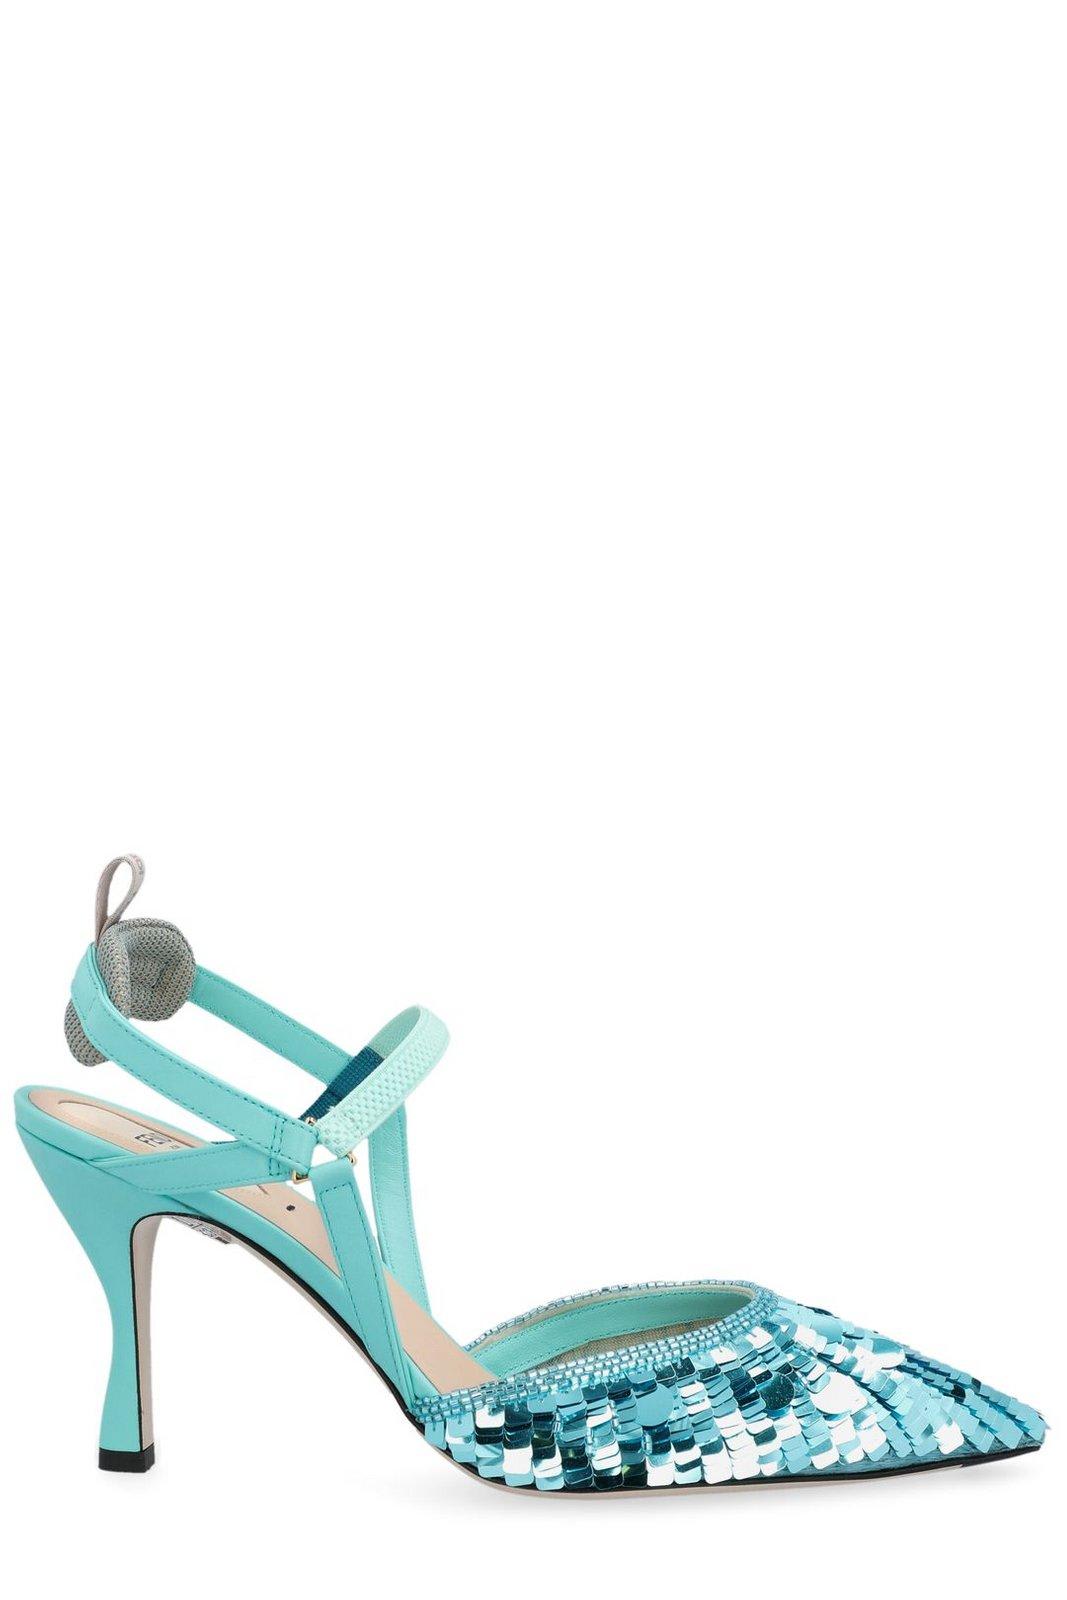 Sequin-embellished High-heeled Slingback Pumps